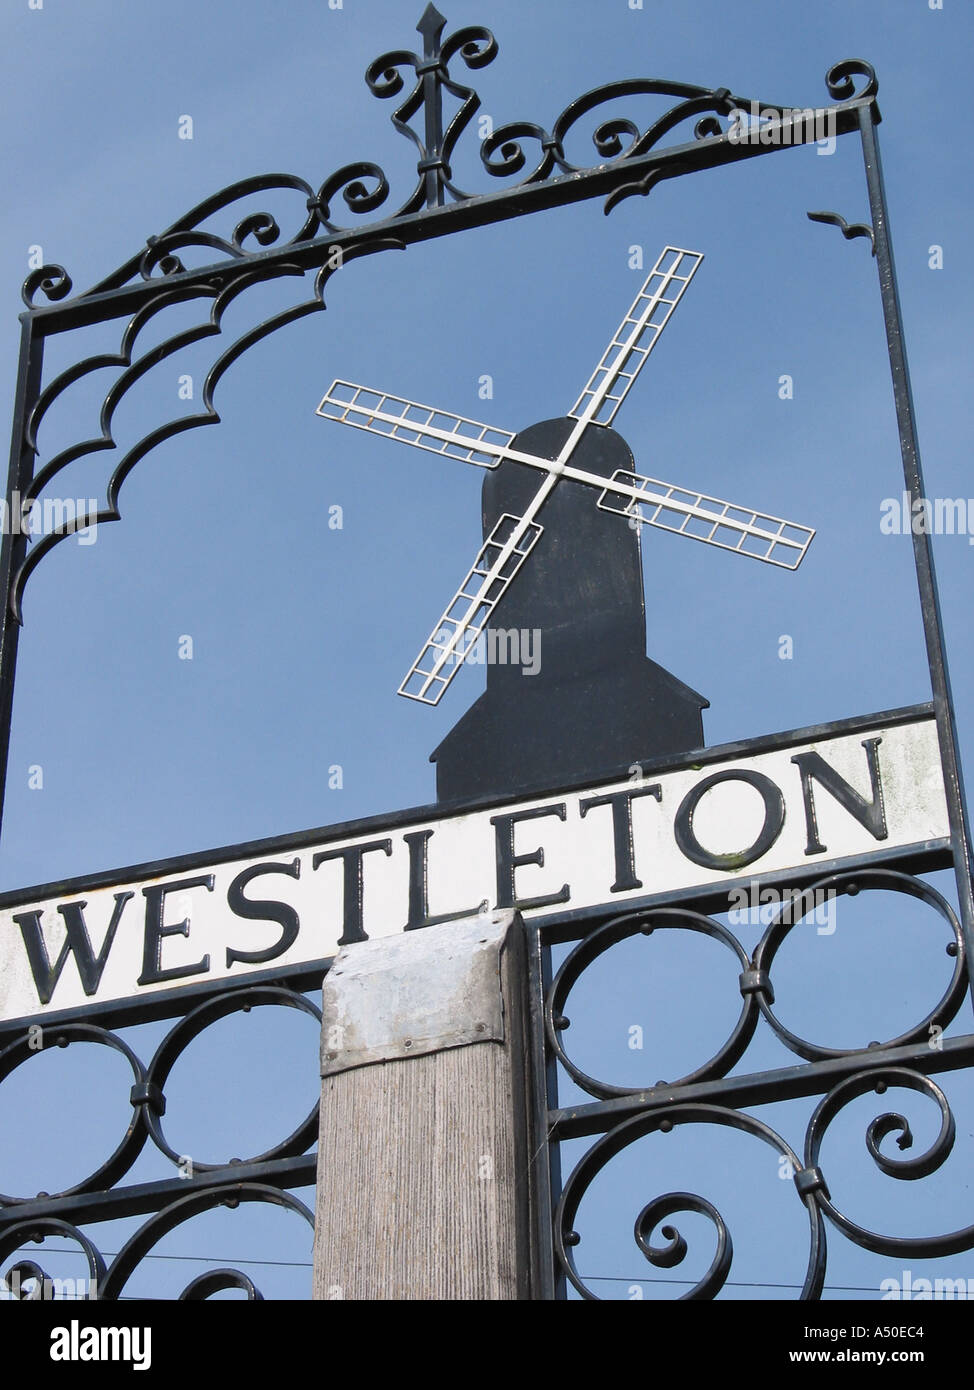 Westleton English village sign, Suffolk, England, United Kingdom Stock Photo